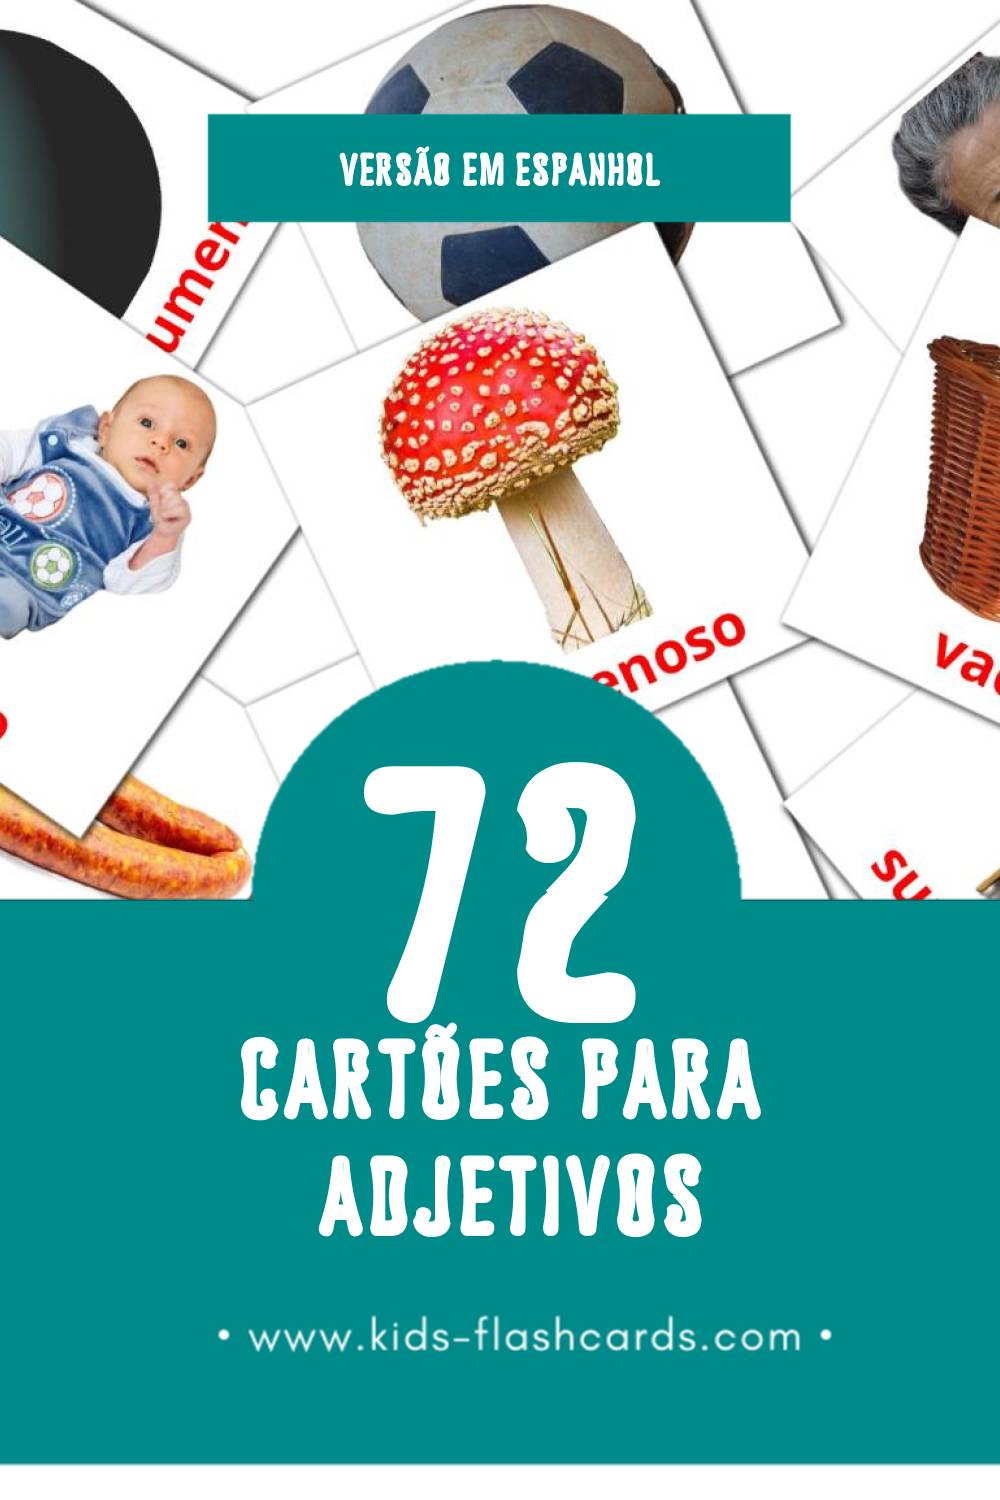 Flashcards de Adjetivos  Visuais para Toddlers (72 cartões em Espanhol)